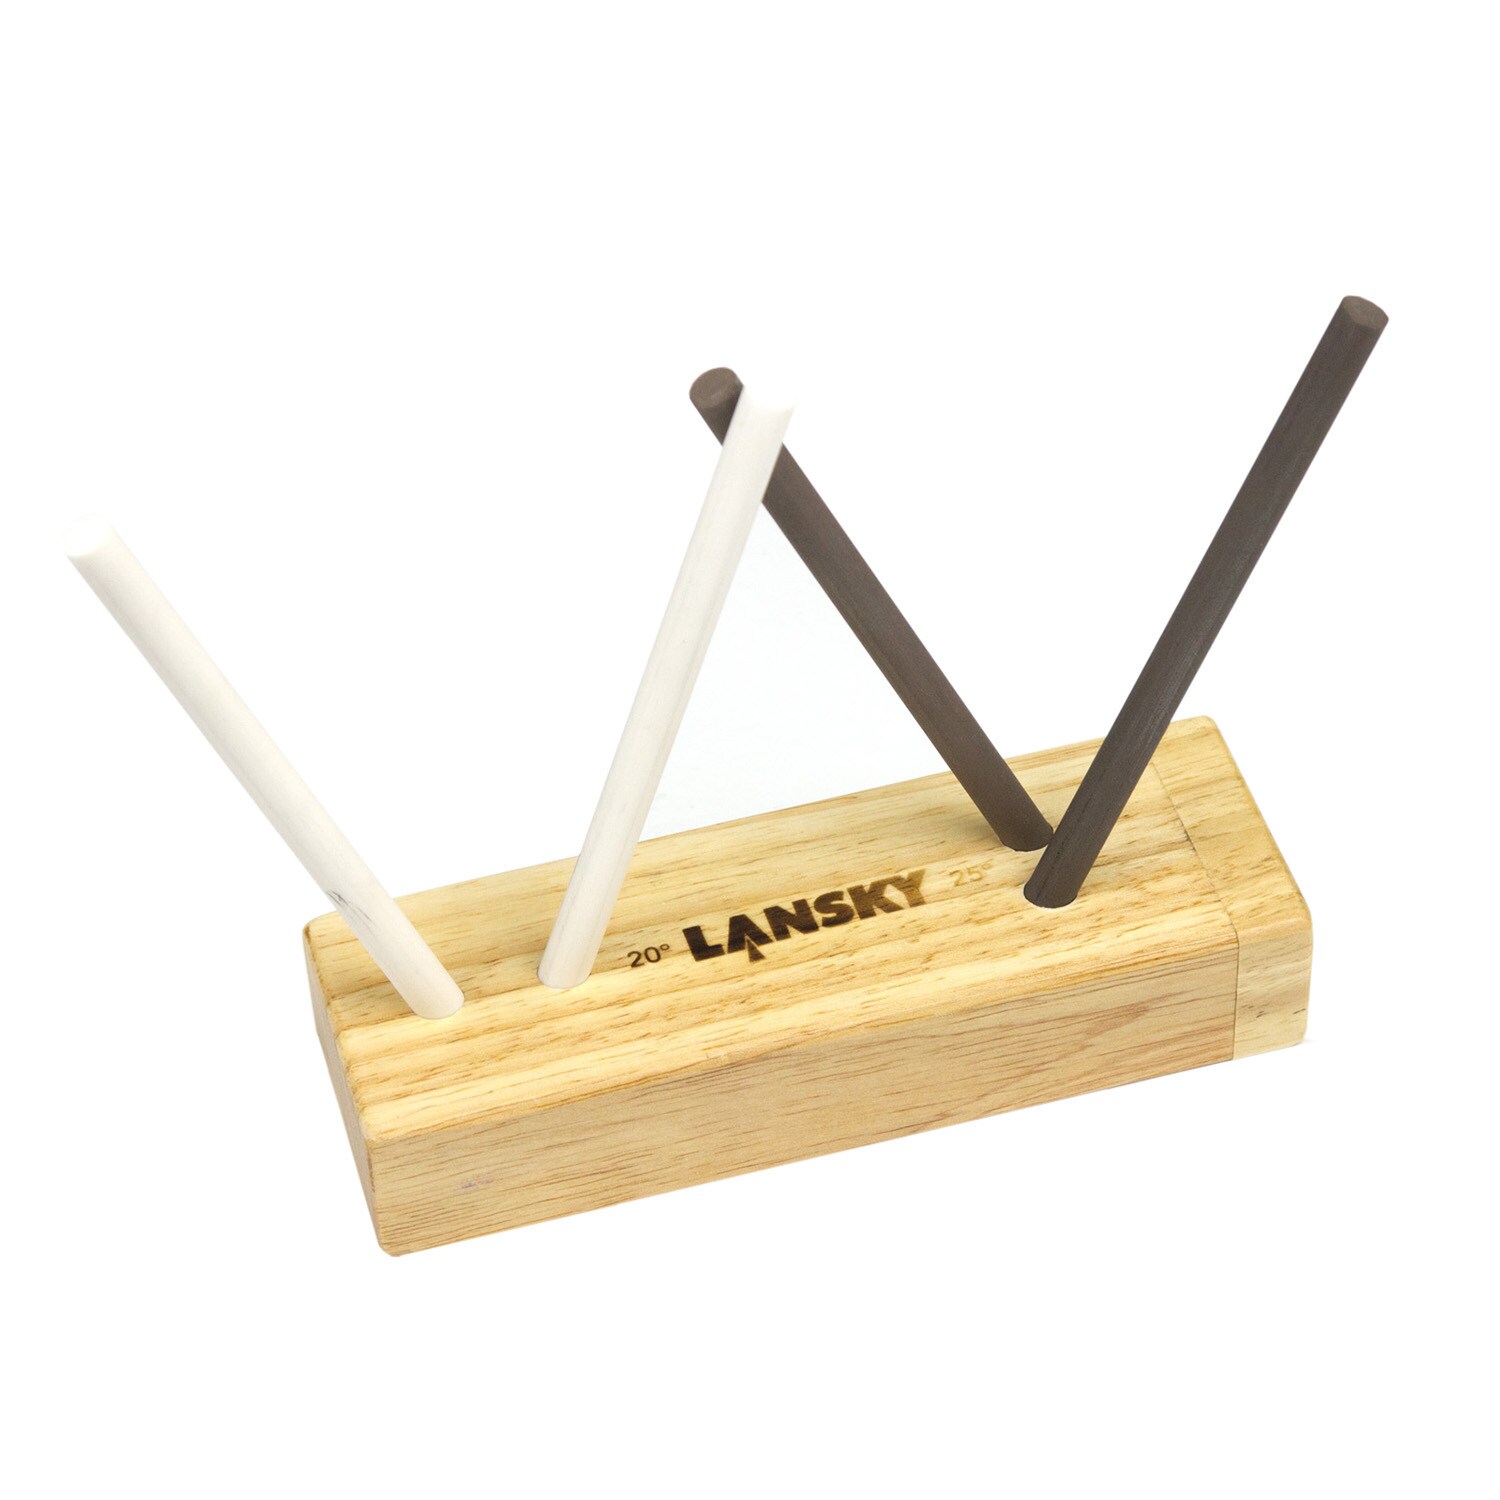 Lansky Turn Box 4 Ceramic Sharpener LCD5D - shop